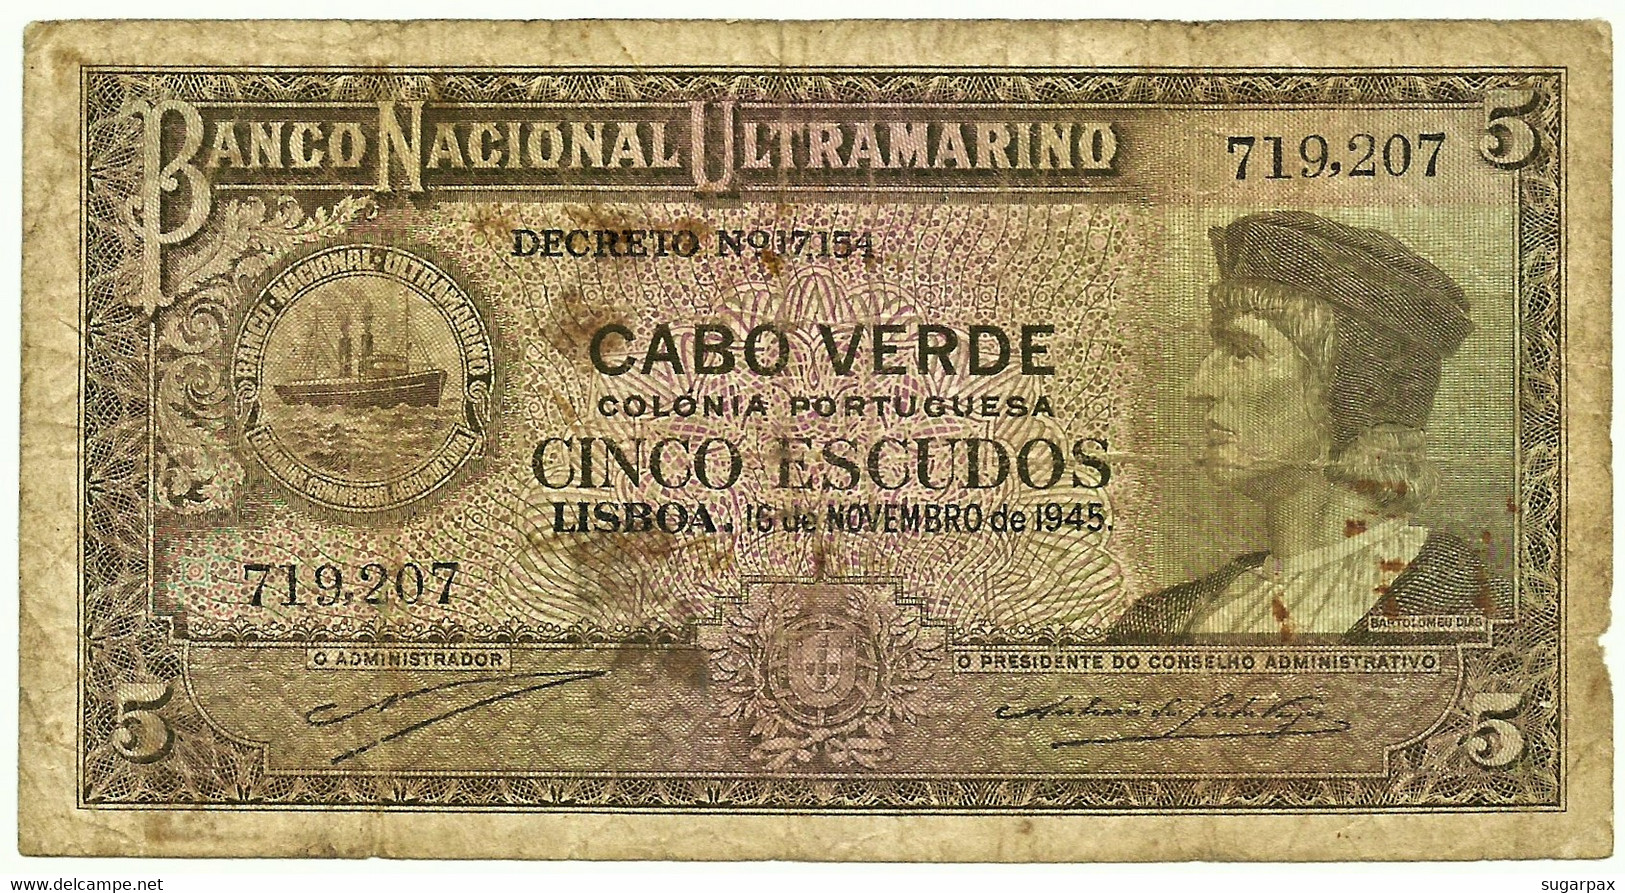 CAPE VERDE - 5 ESCUDOS - 15.11.1945 - Pick 41 - Bartolomeu Dias - Cap Verde